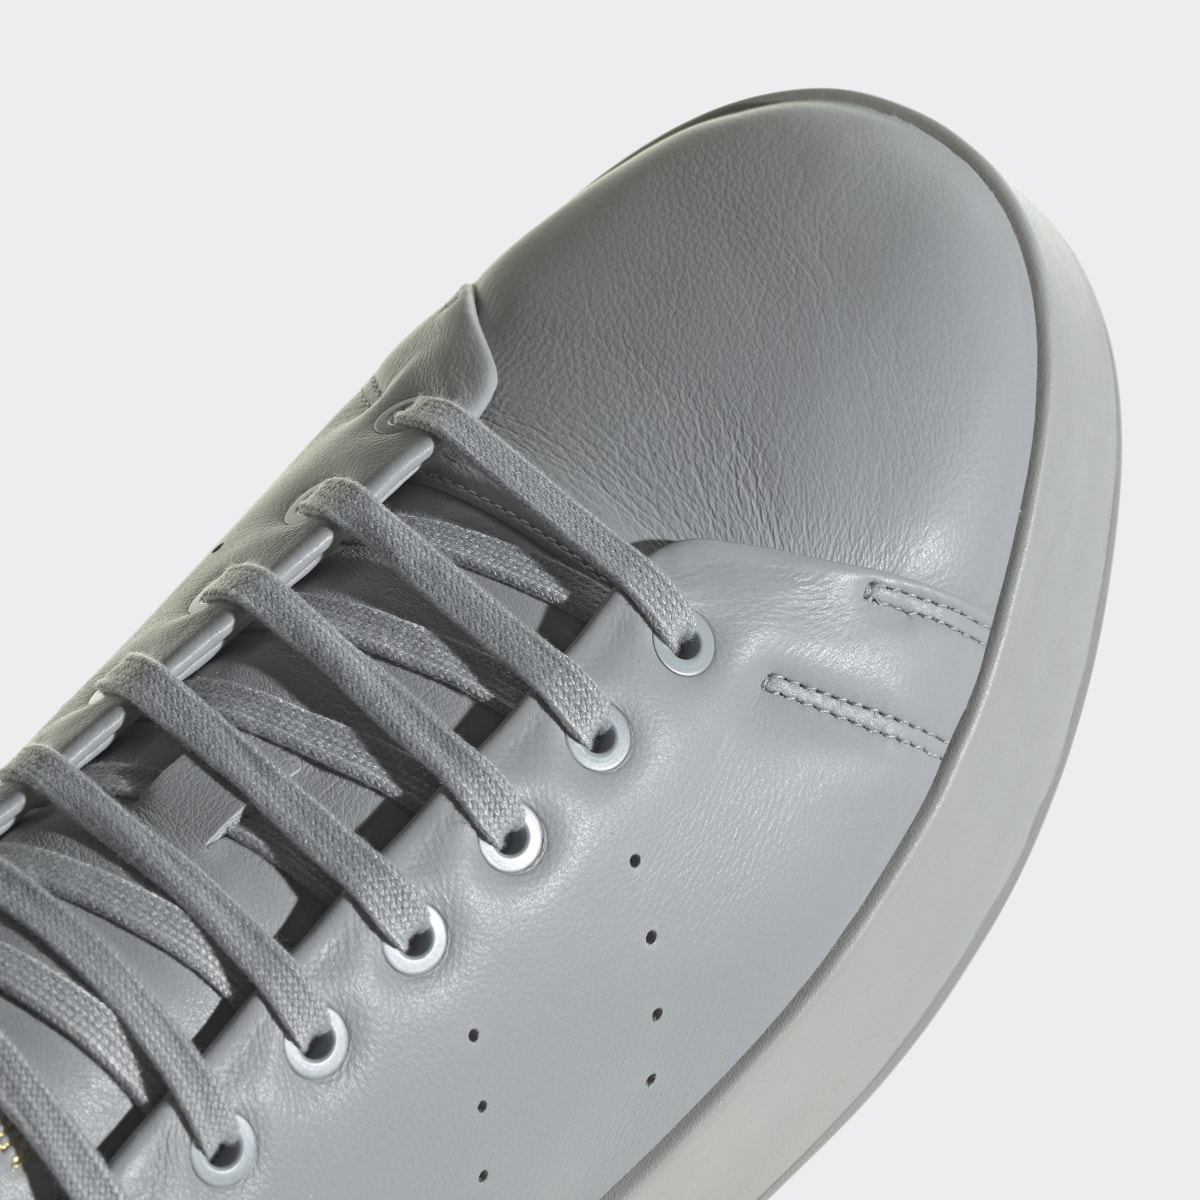 Adidas Scarpe Stan Smith Recon. 9